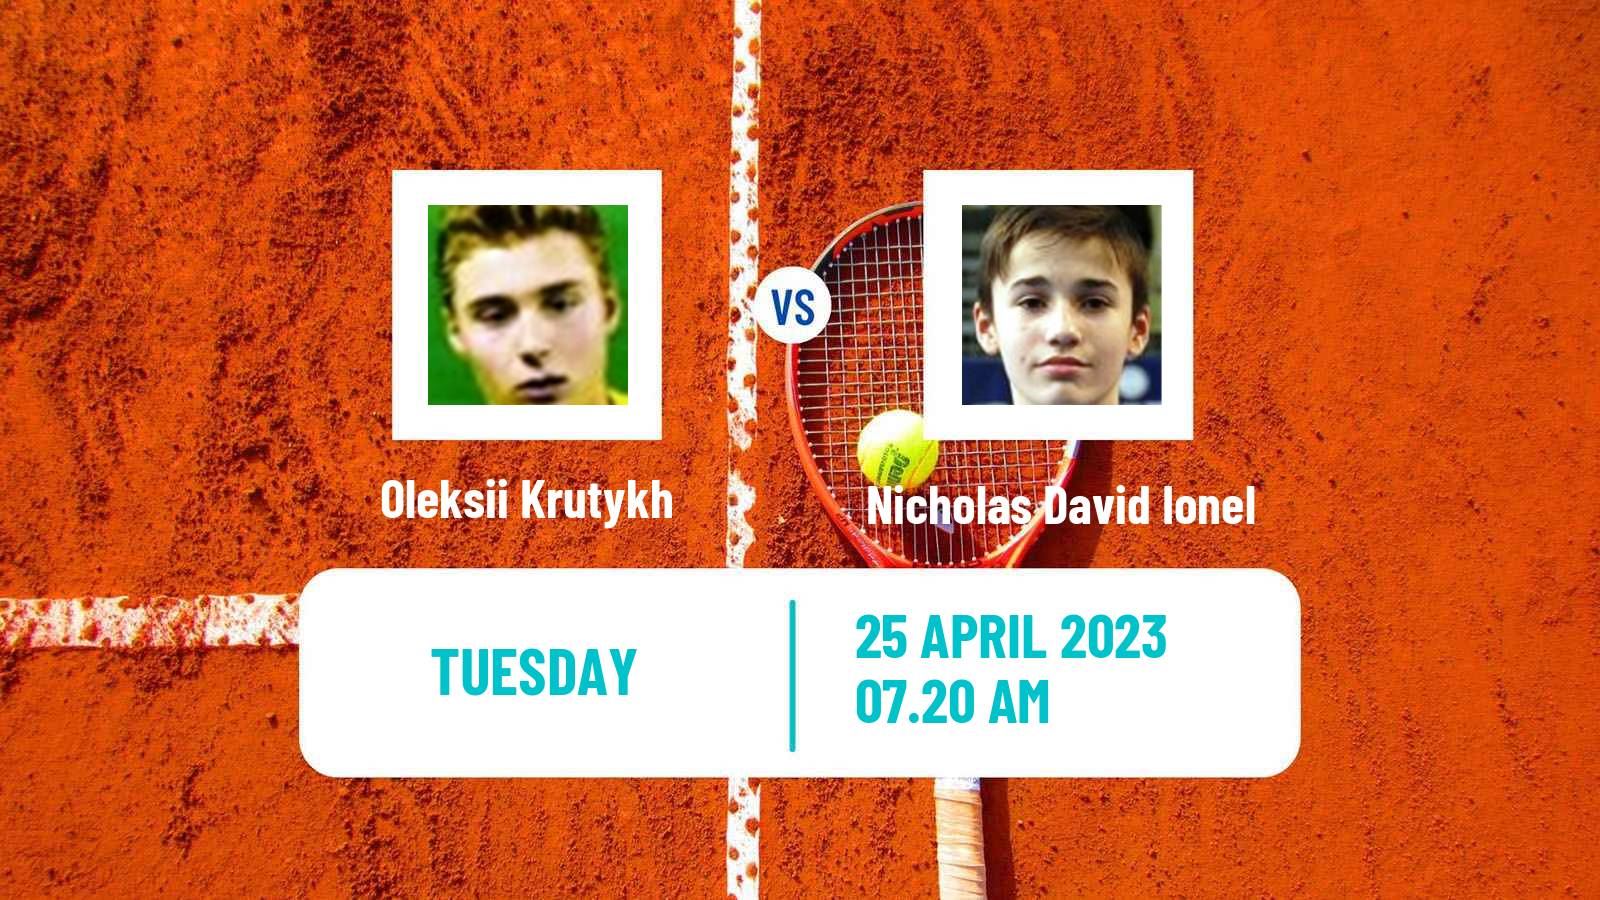 Tennis ATP Challenger Oleksii Krutykh - Nicholas David Ionel